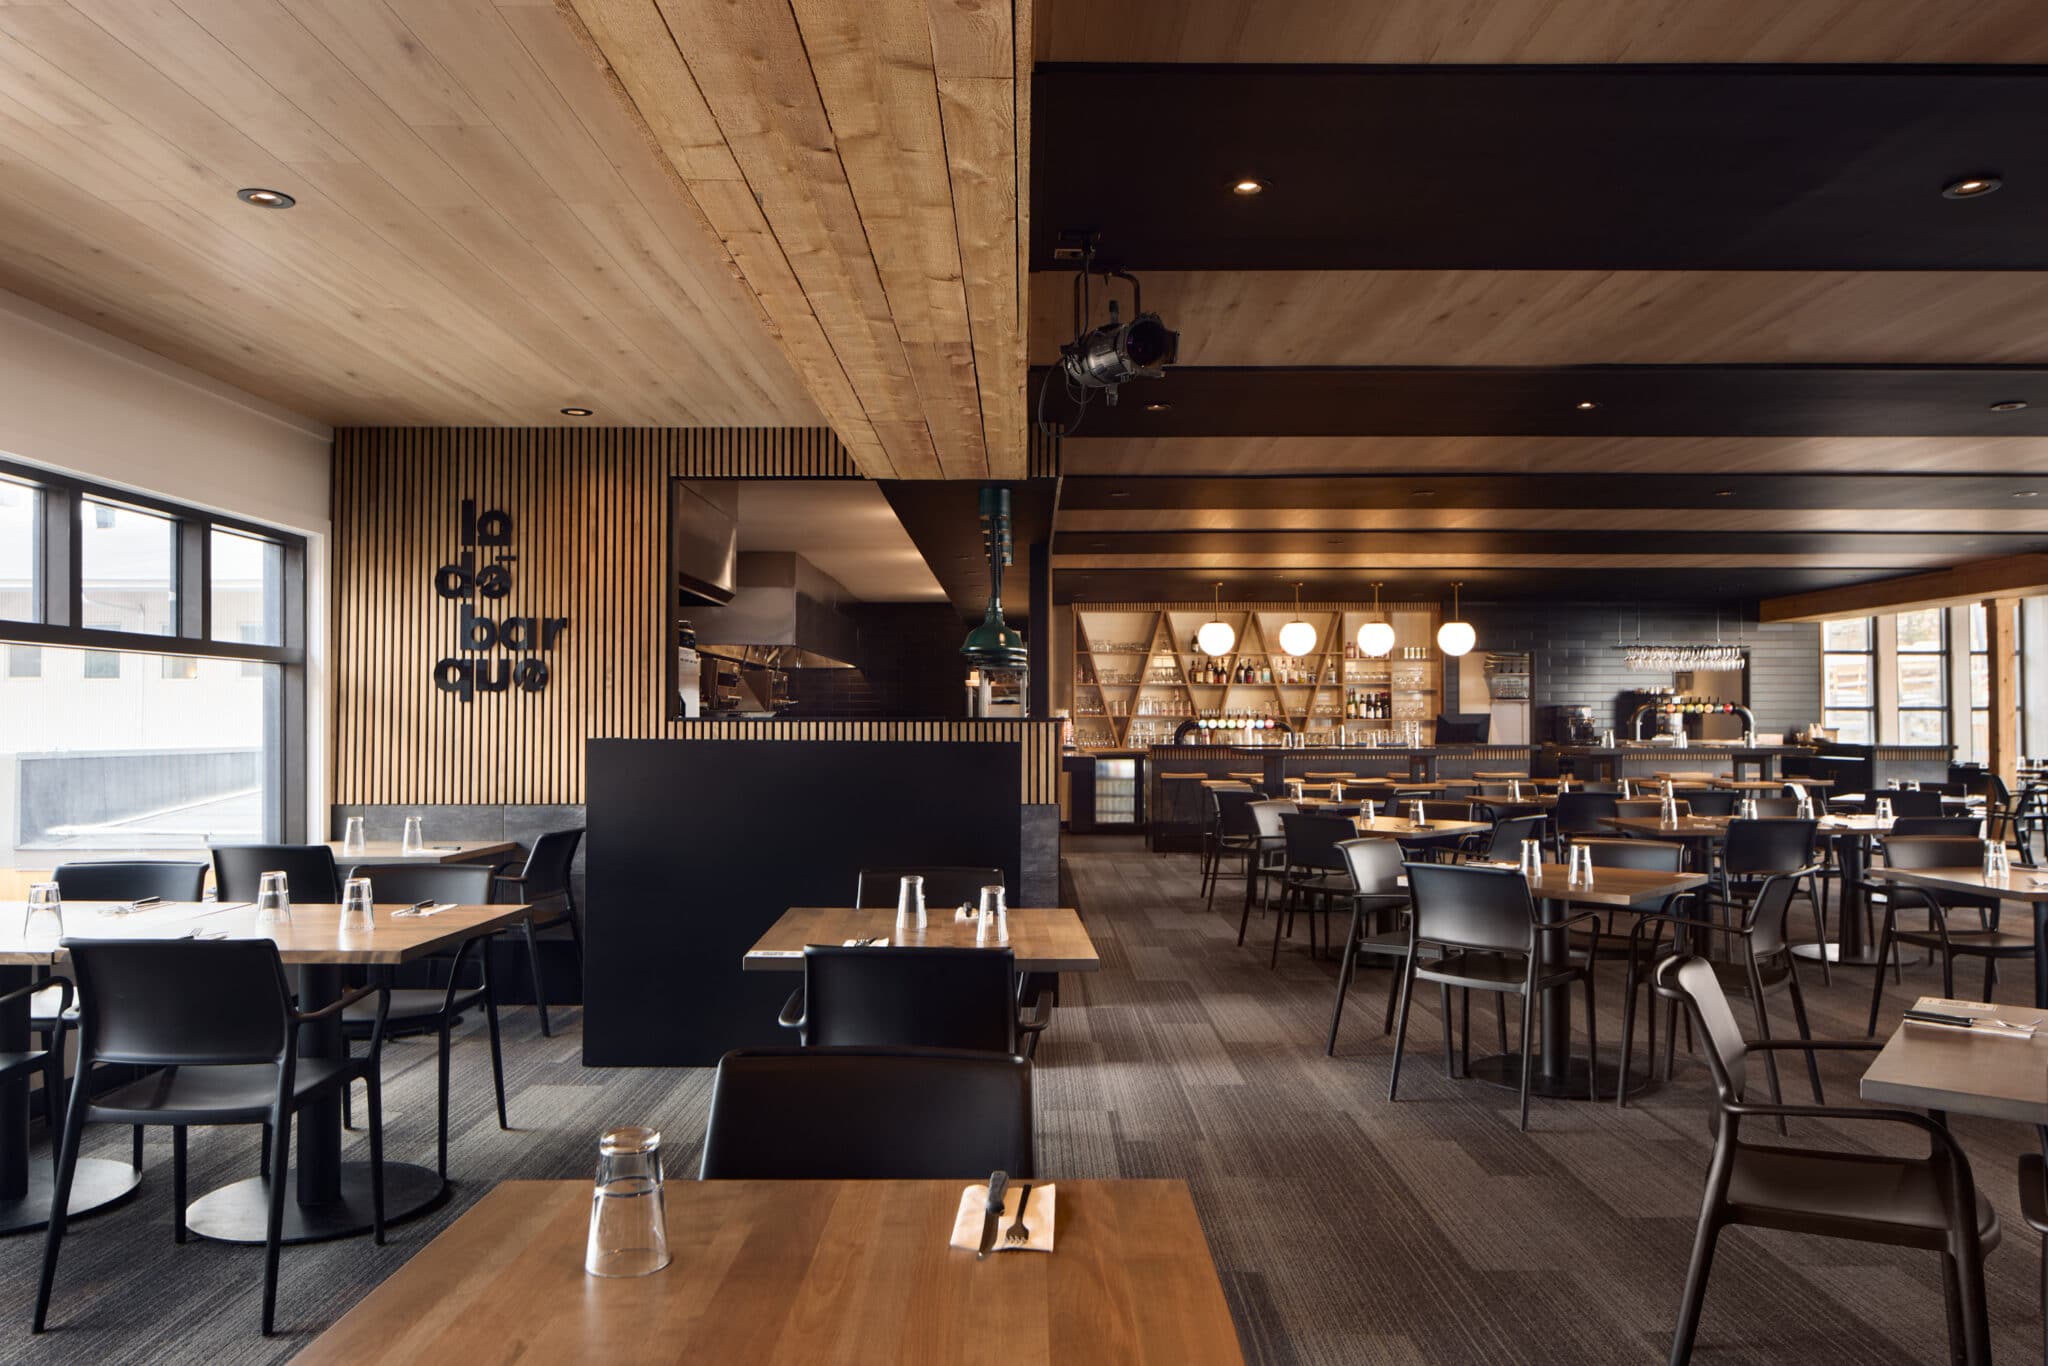 Projet de design corporatif - Restaurant Bar La Débarque Boutique de ski à Bromont, montage d'expériences par VAD Designers d'intérieur commercial.